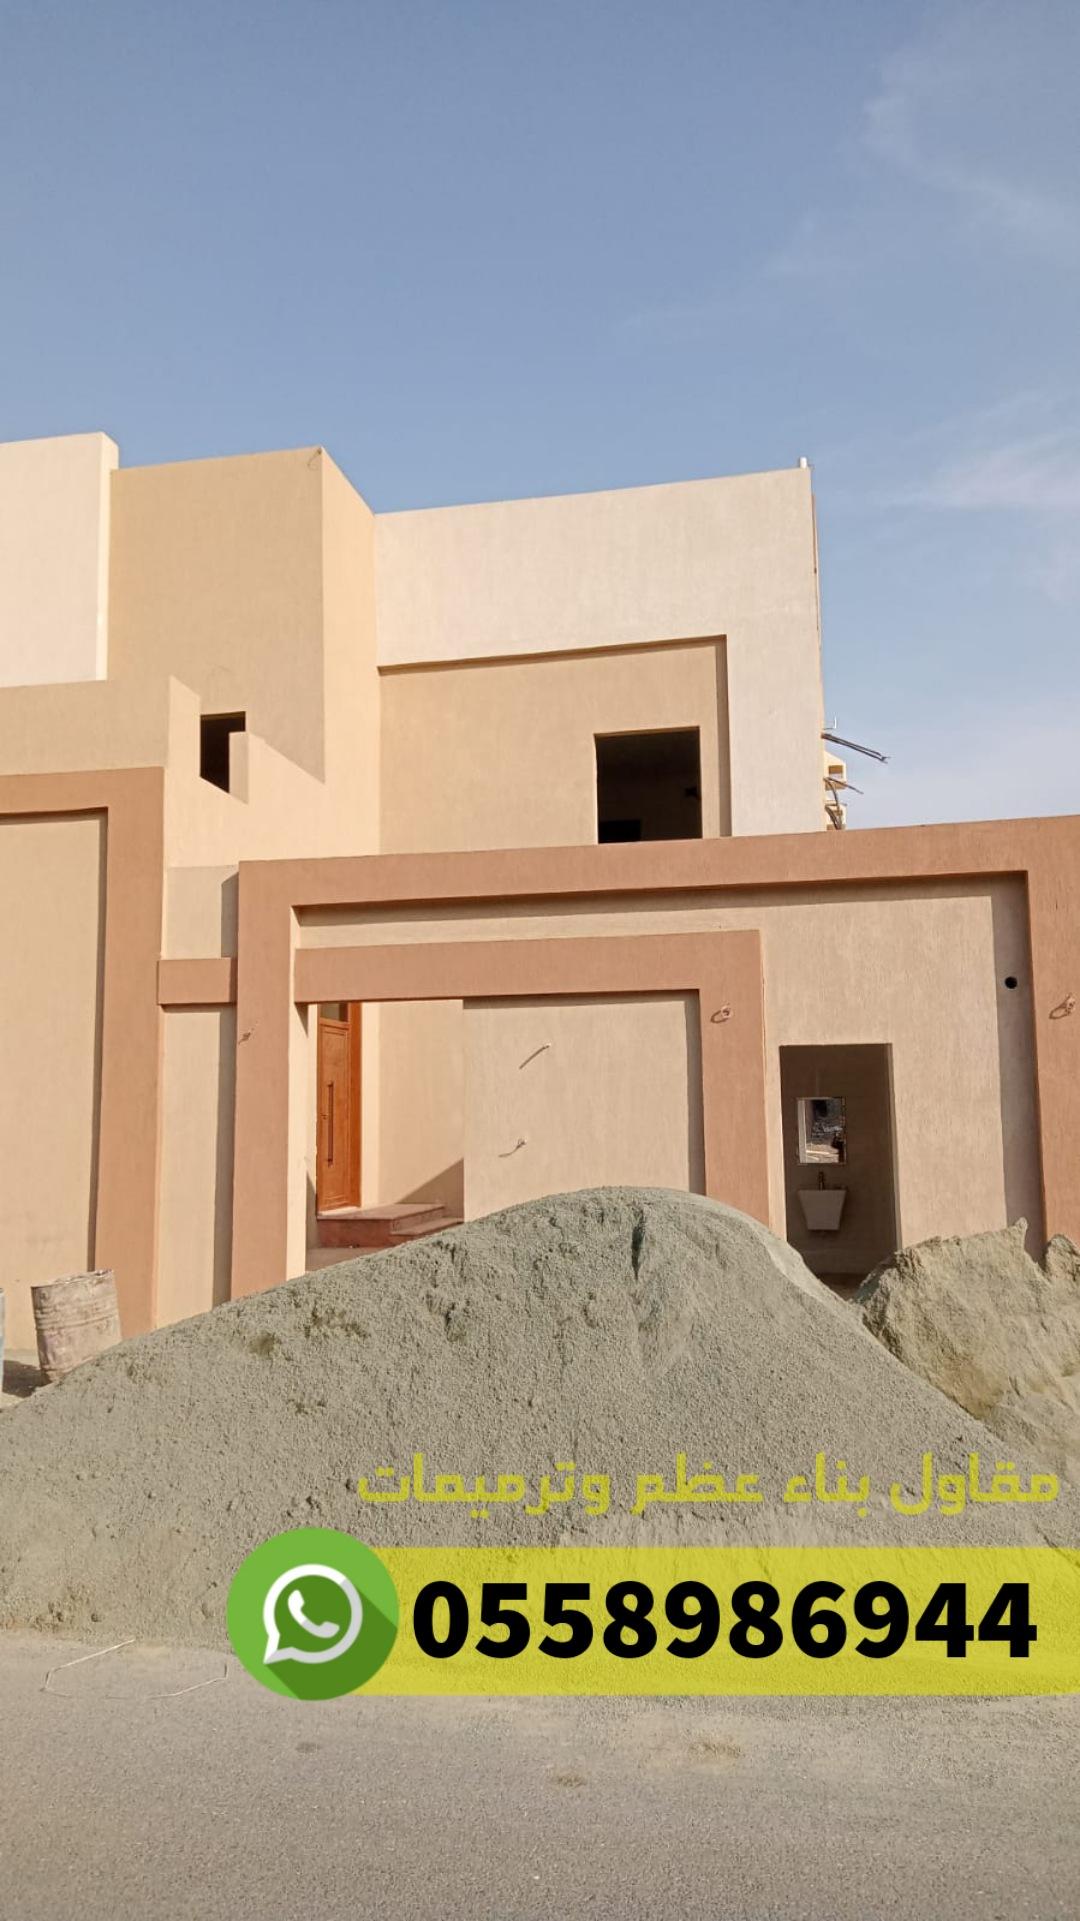 مؤسسة مقاولات مباني منازل عمائر فلل في جدة, 0558986944